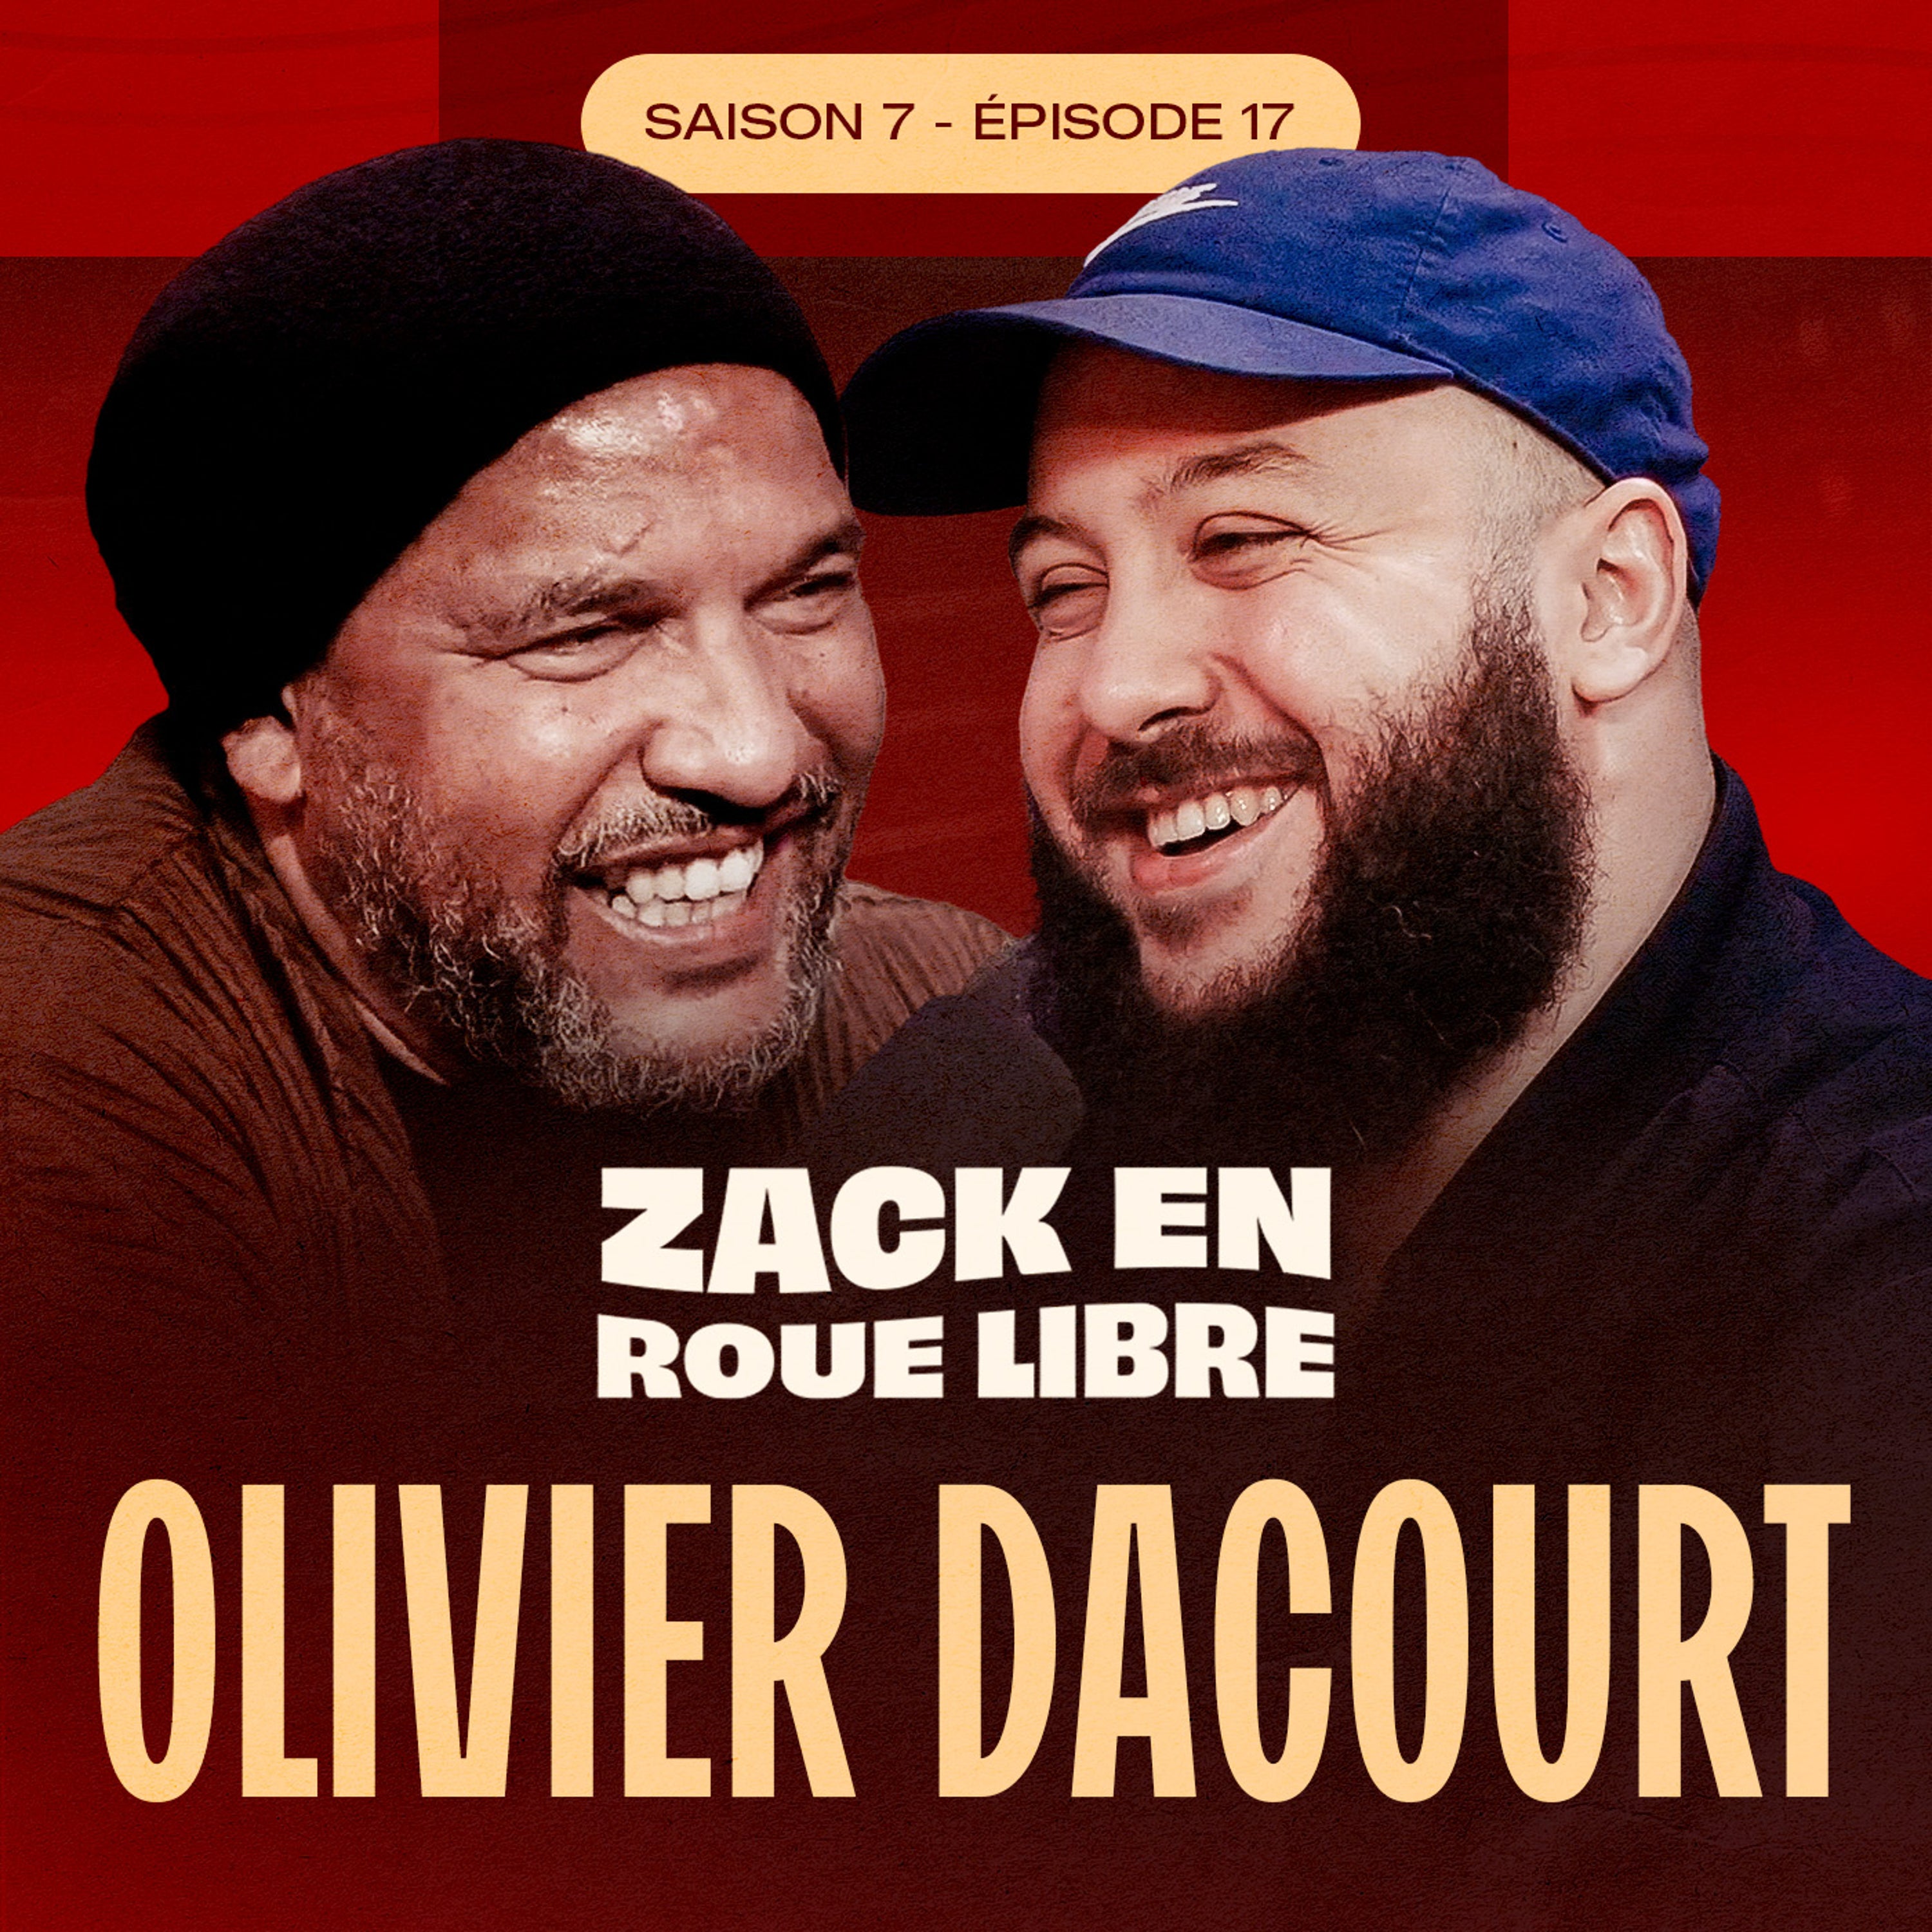 Olivier Dacourt, Taulier du Foot à la Carrière Inspirante - Zack en Roue Libre avec Dacourt (S07E17)